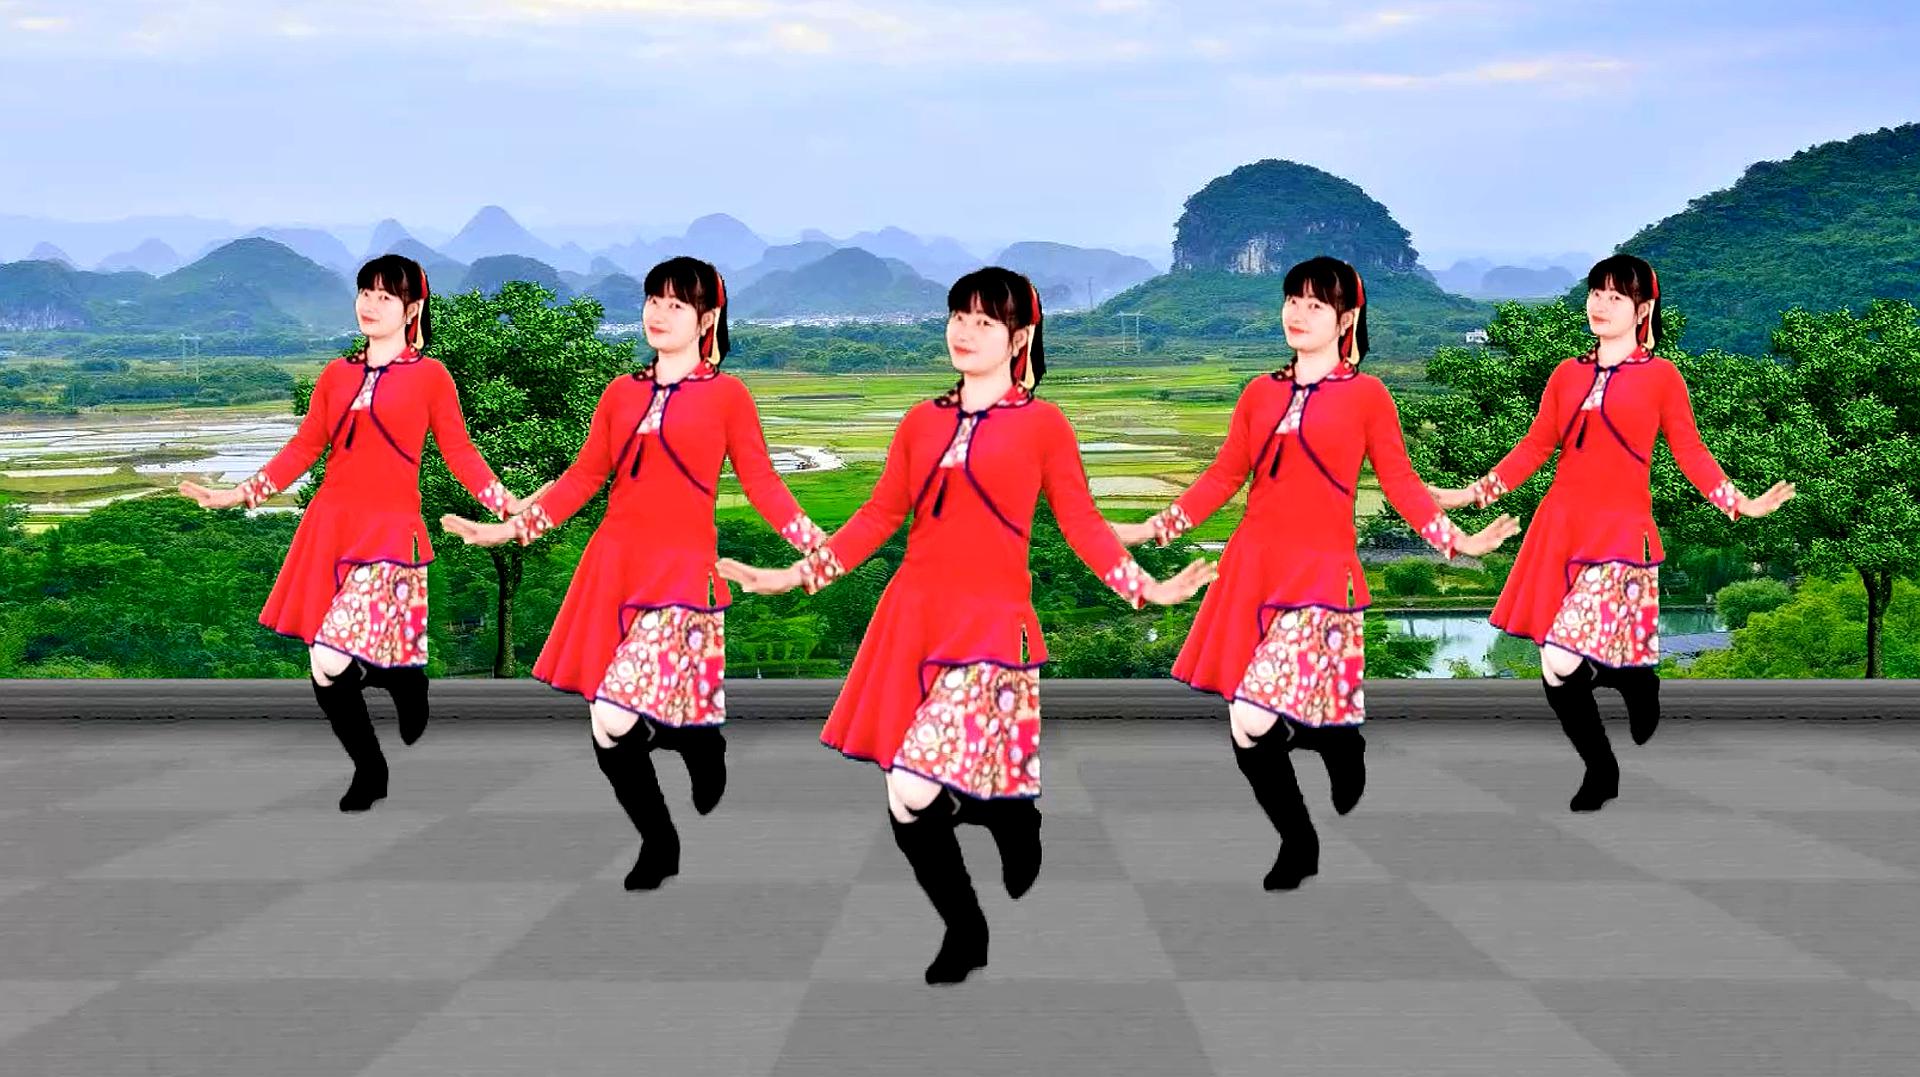 热门广场舞《女儿情》经典的金曲,优美的32步,像只蝴蝶飞呀飞